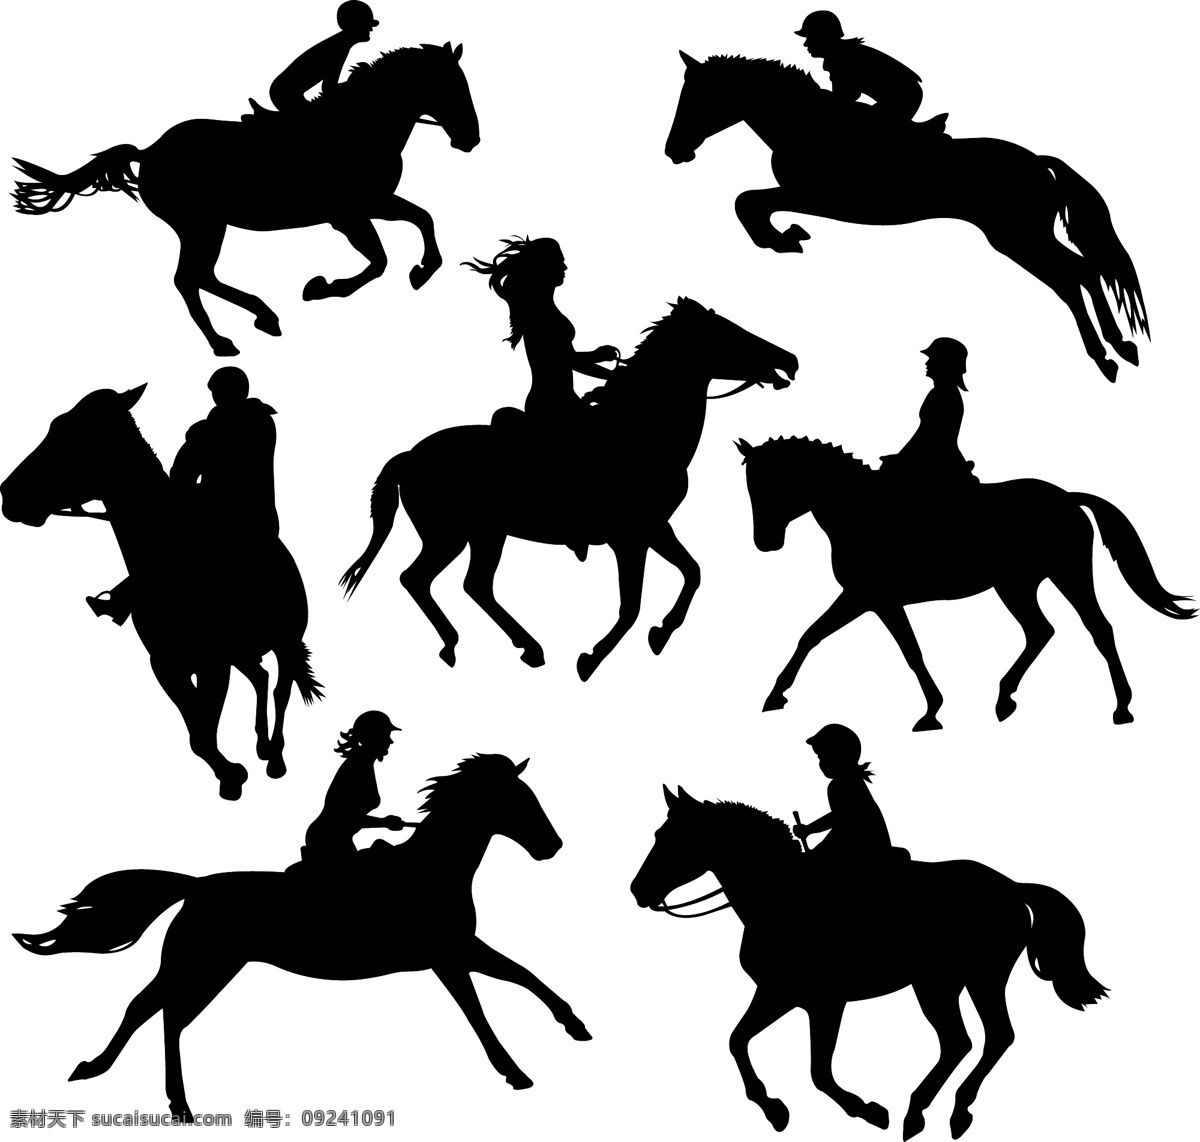 女骑师 骑师 骑士 骑马 人物剪影 女性剪影 马剪影 职业人物 人物矢量素材 妇女女性 矢量人物 矢量